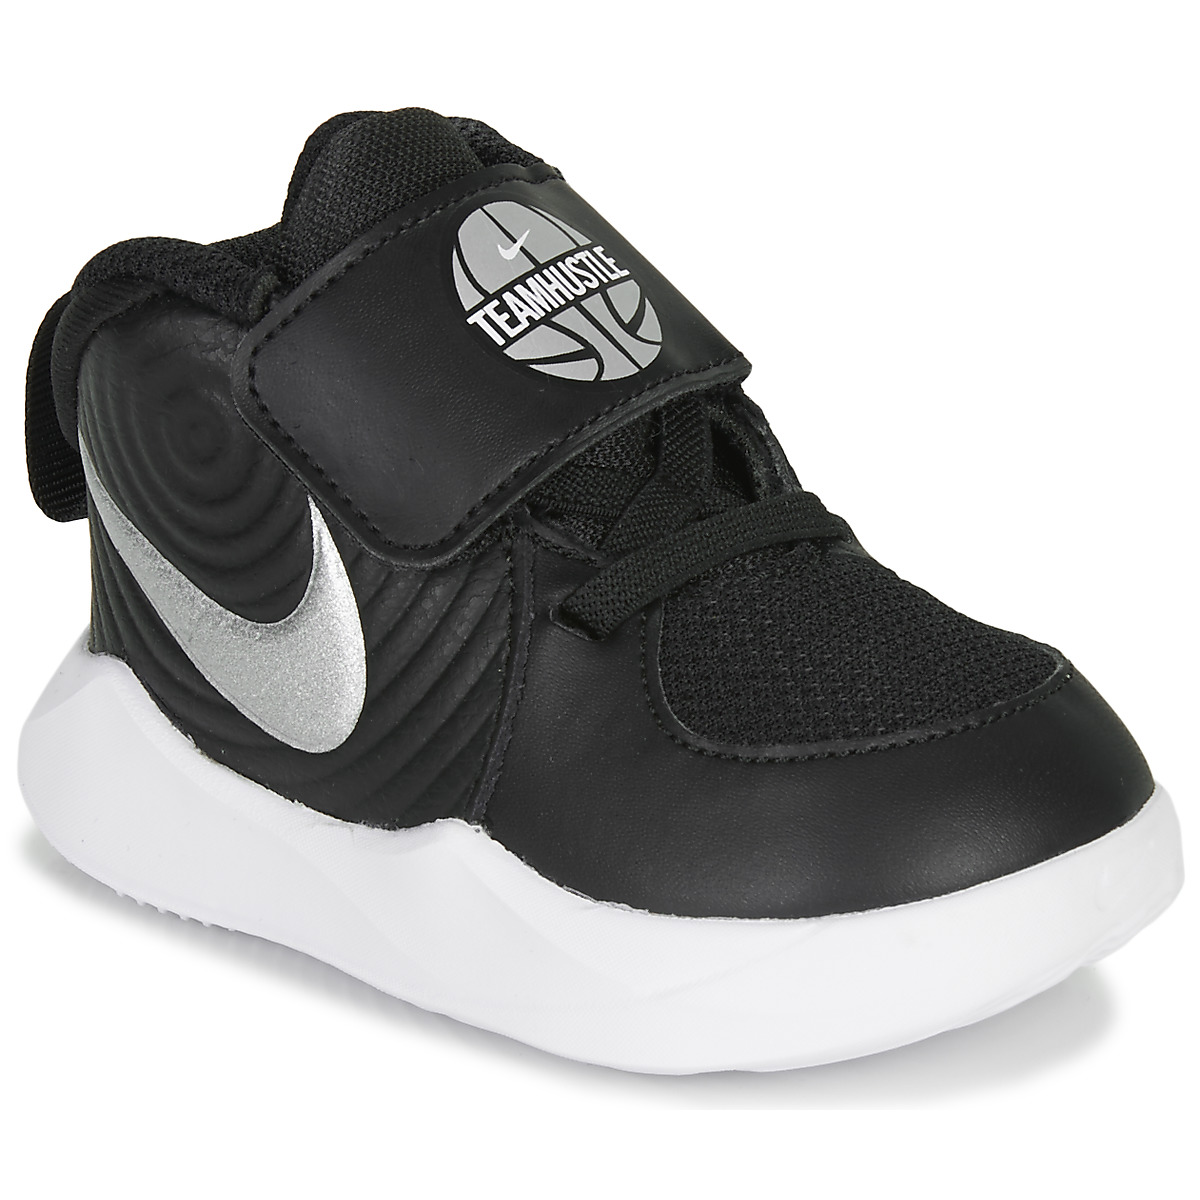 Παπούτσια του Μπάσκετ Nike TEAM HUSTLE D 9 TD Δέρμα